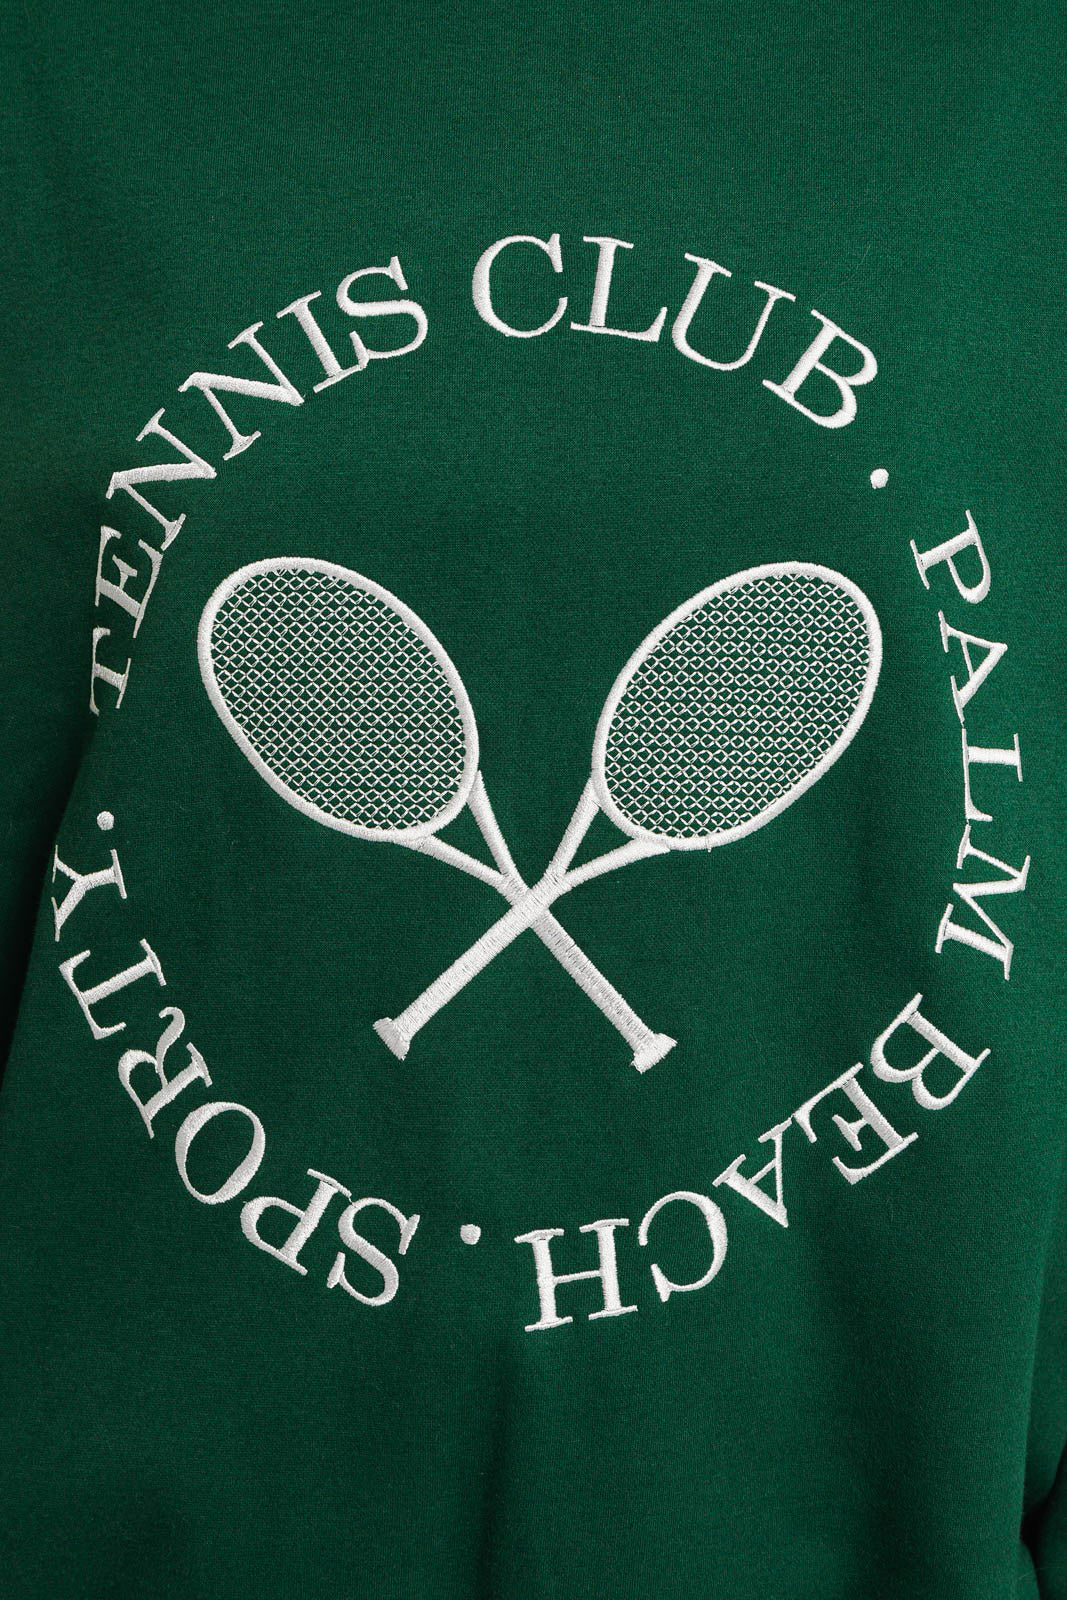 Let’s Play Tennis Sweatshirt